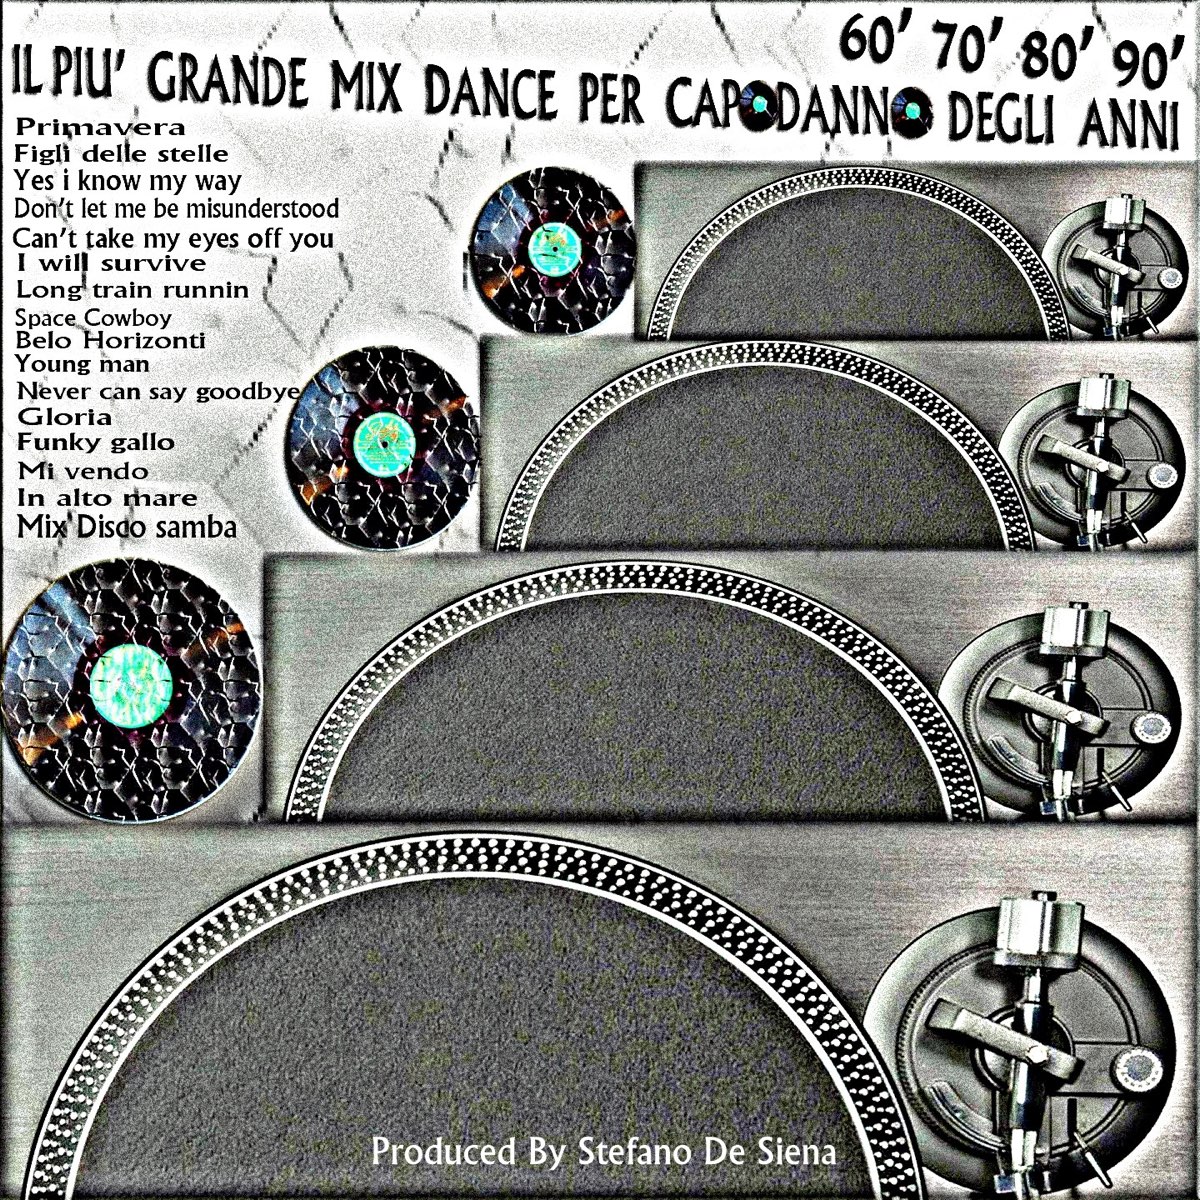 Il più grande mix dance per capodanno degli anni '60, '70, '80, '90 - Album  di Giuliana Pavia & Stefano De Siena - Apple Music